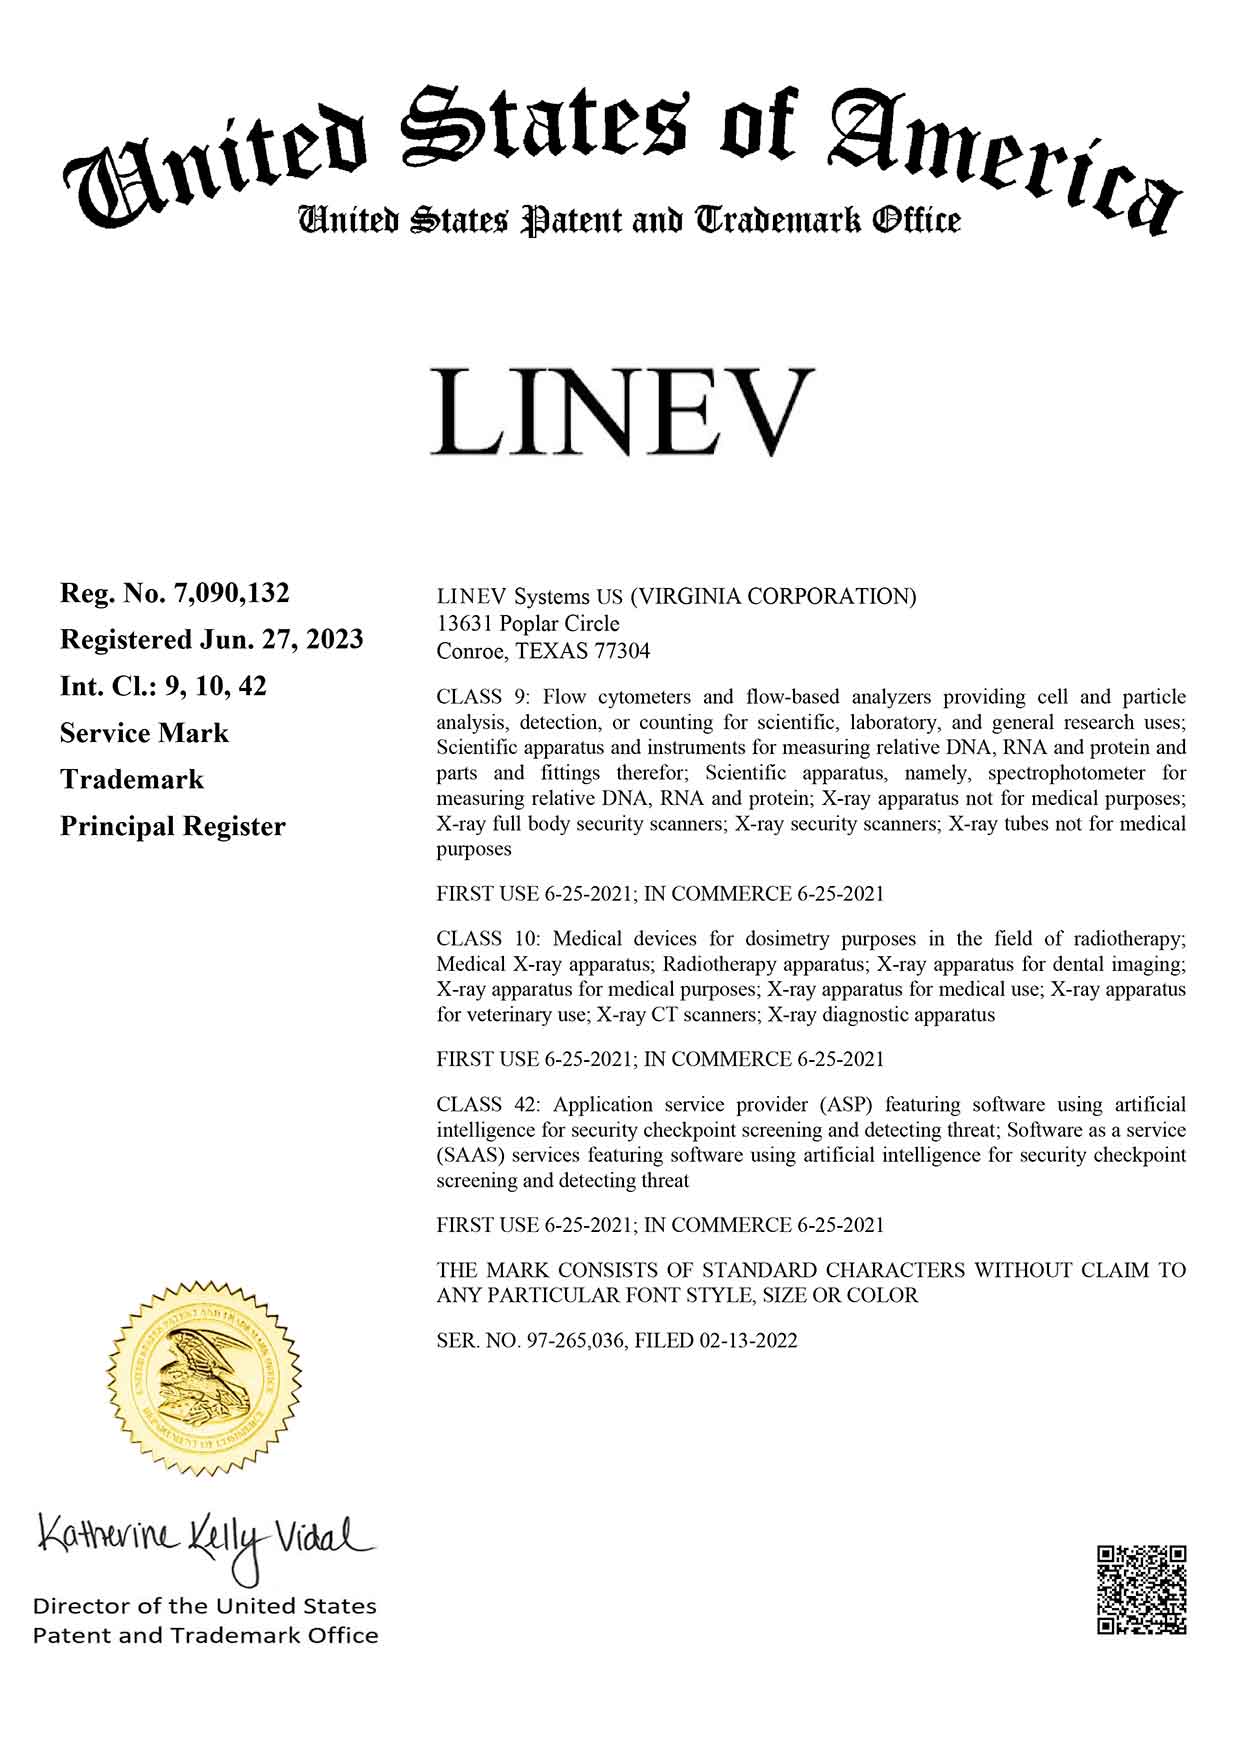 LINEV TM Registration Certificate for US